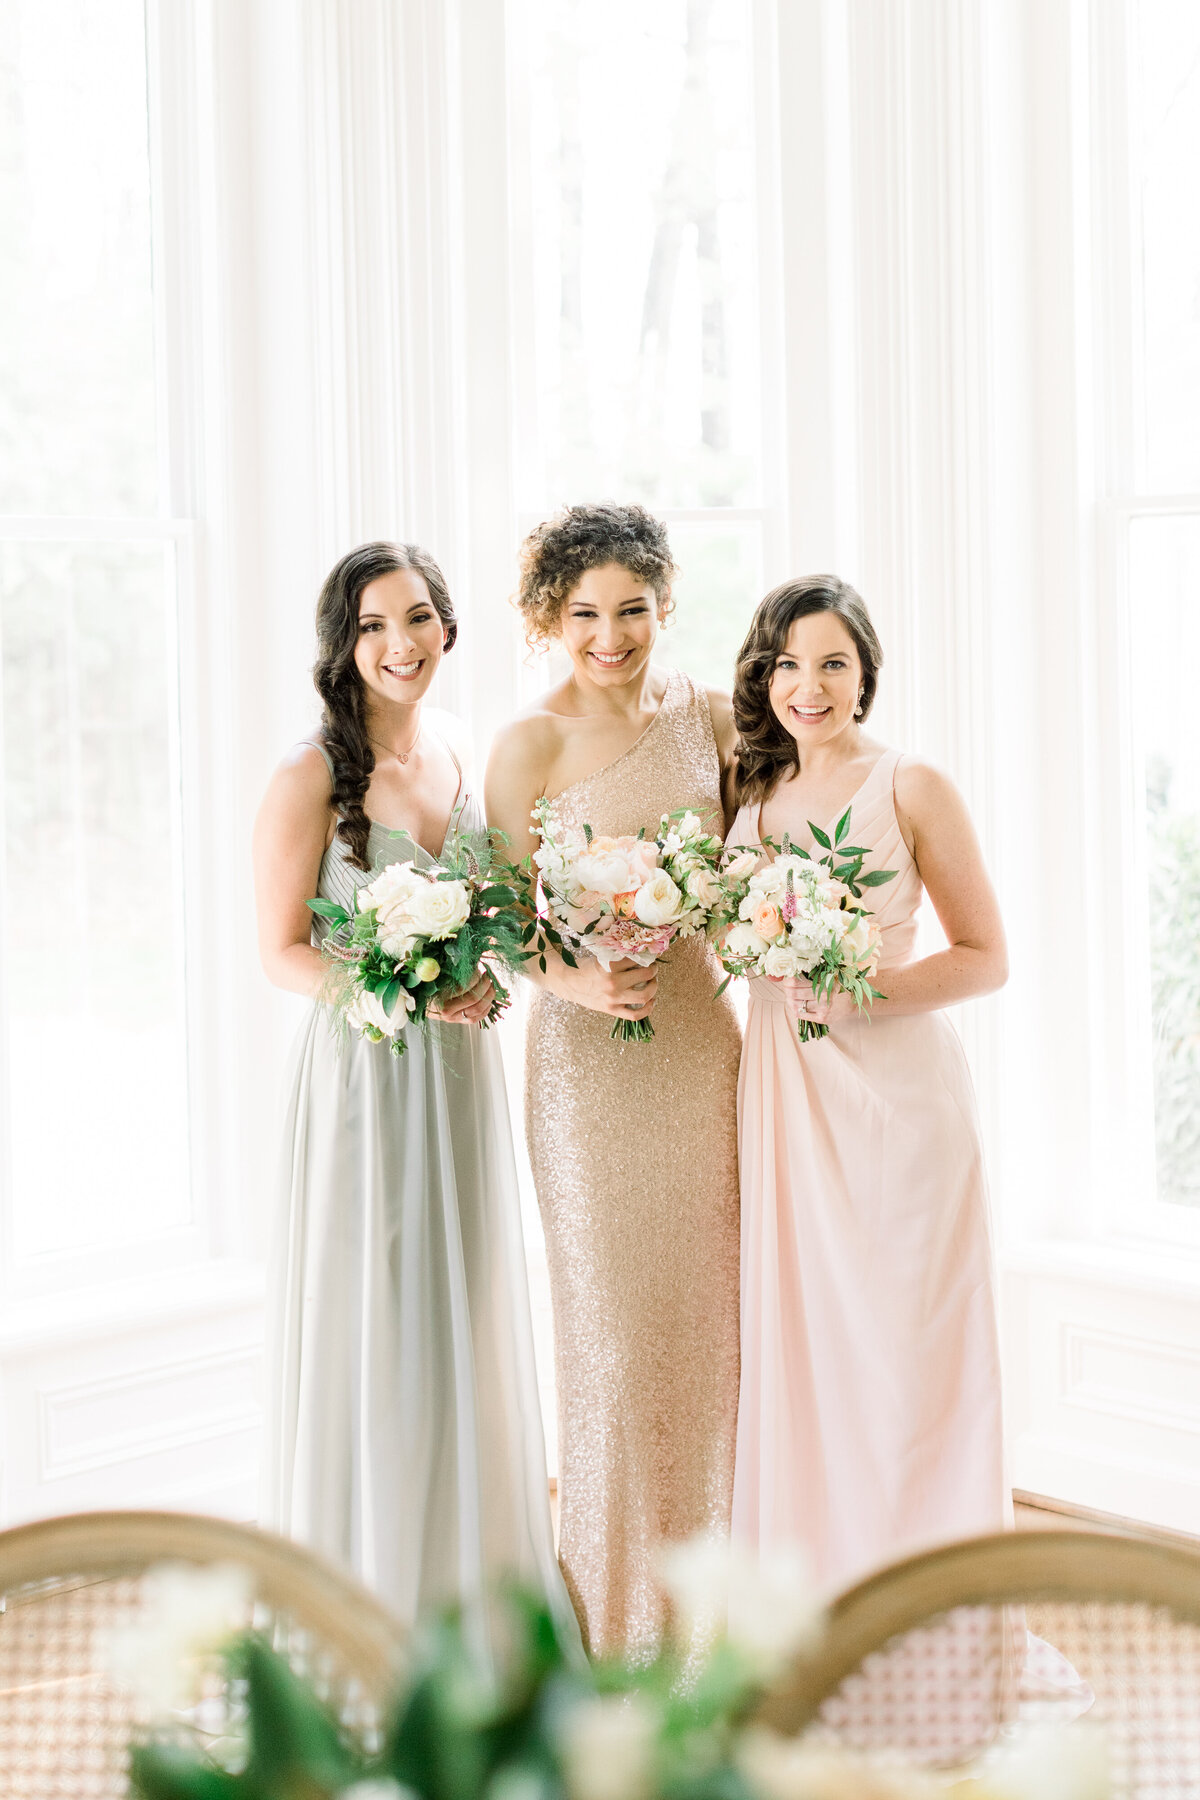 Sarasota, Florida Wedding Photographers | Rebekah & Grace Photography